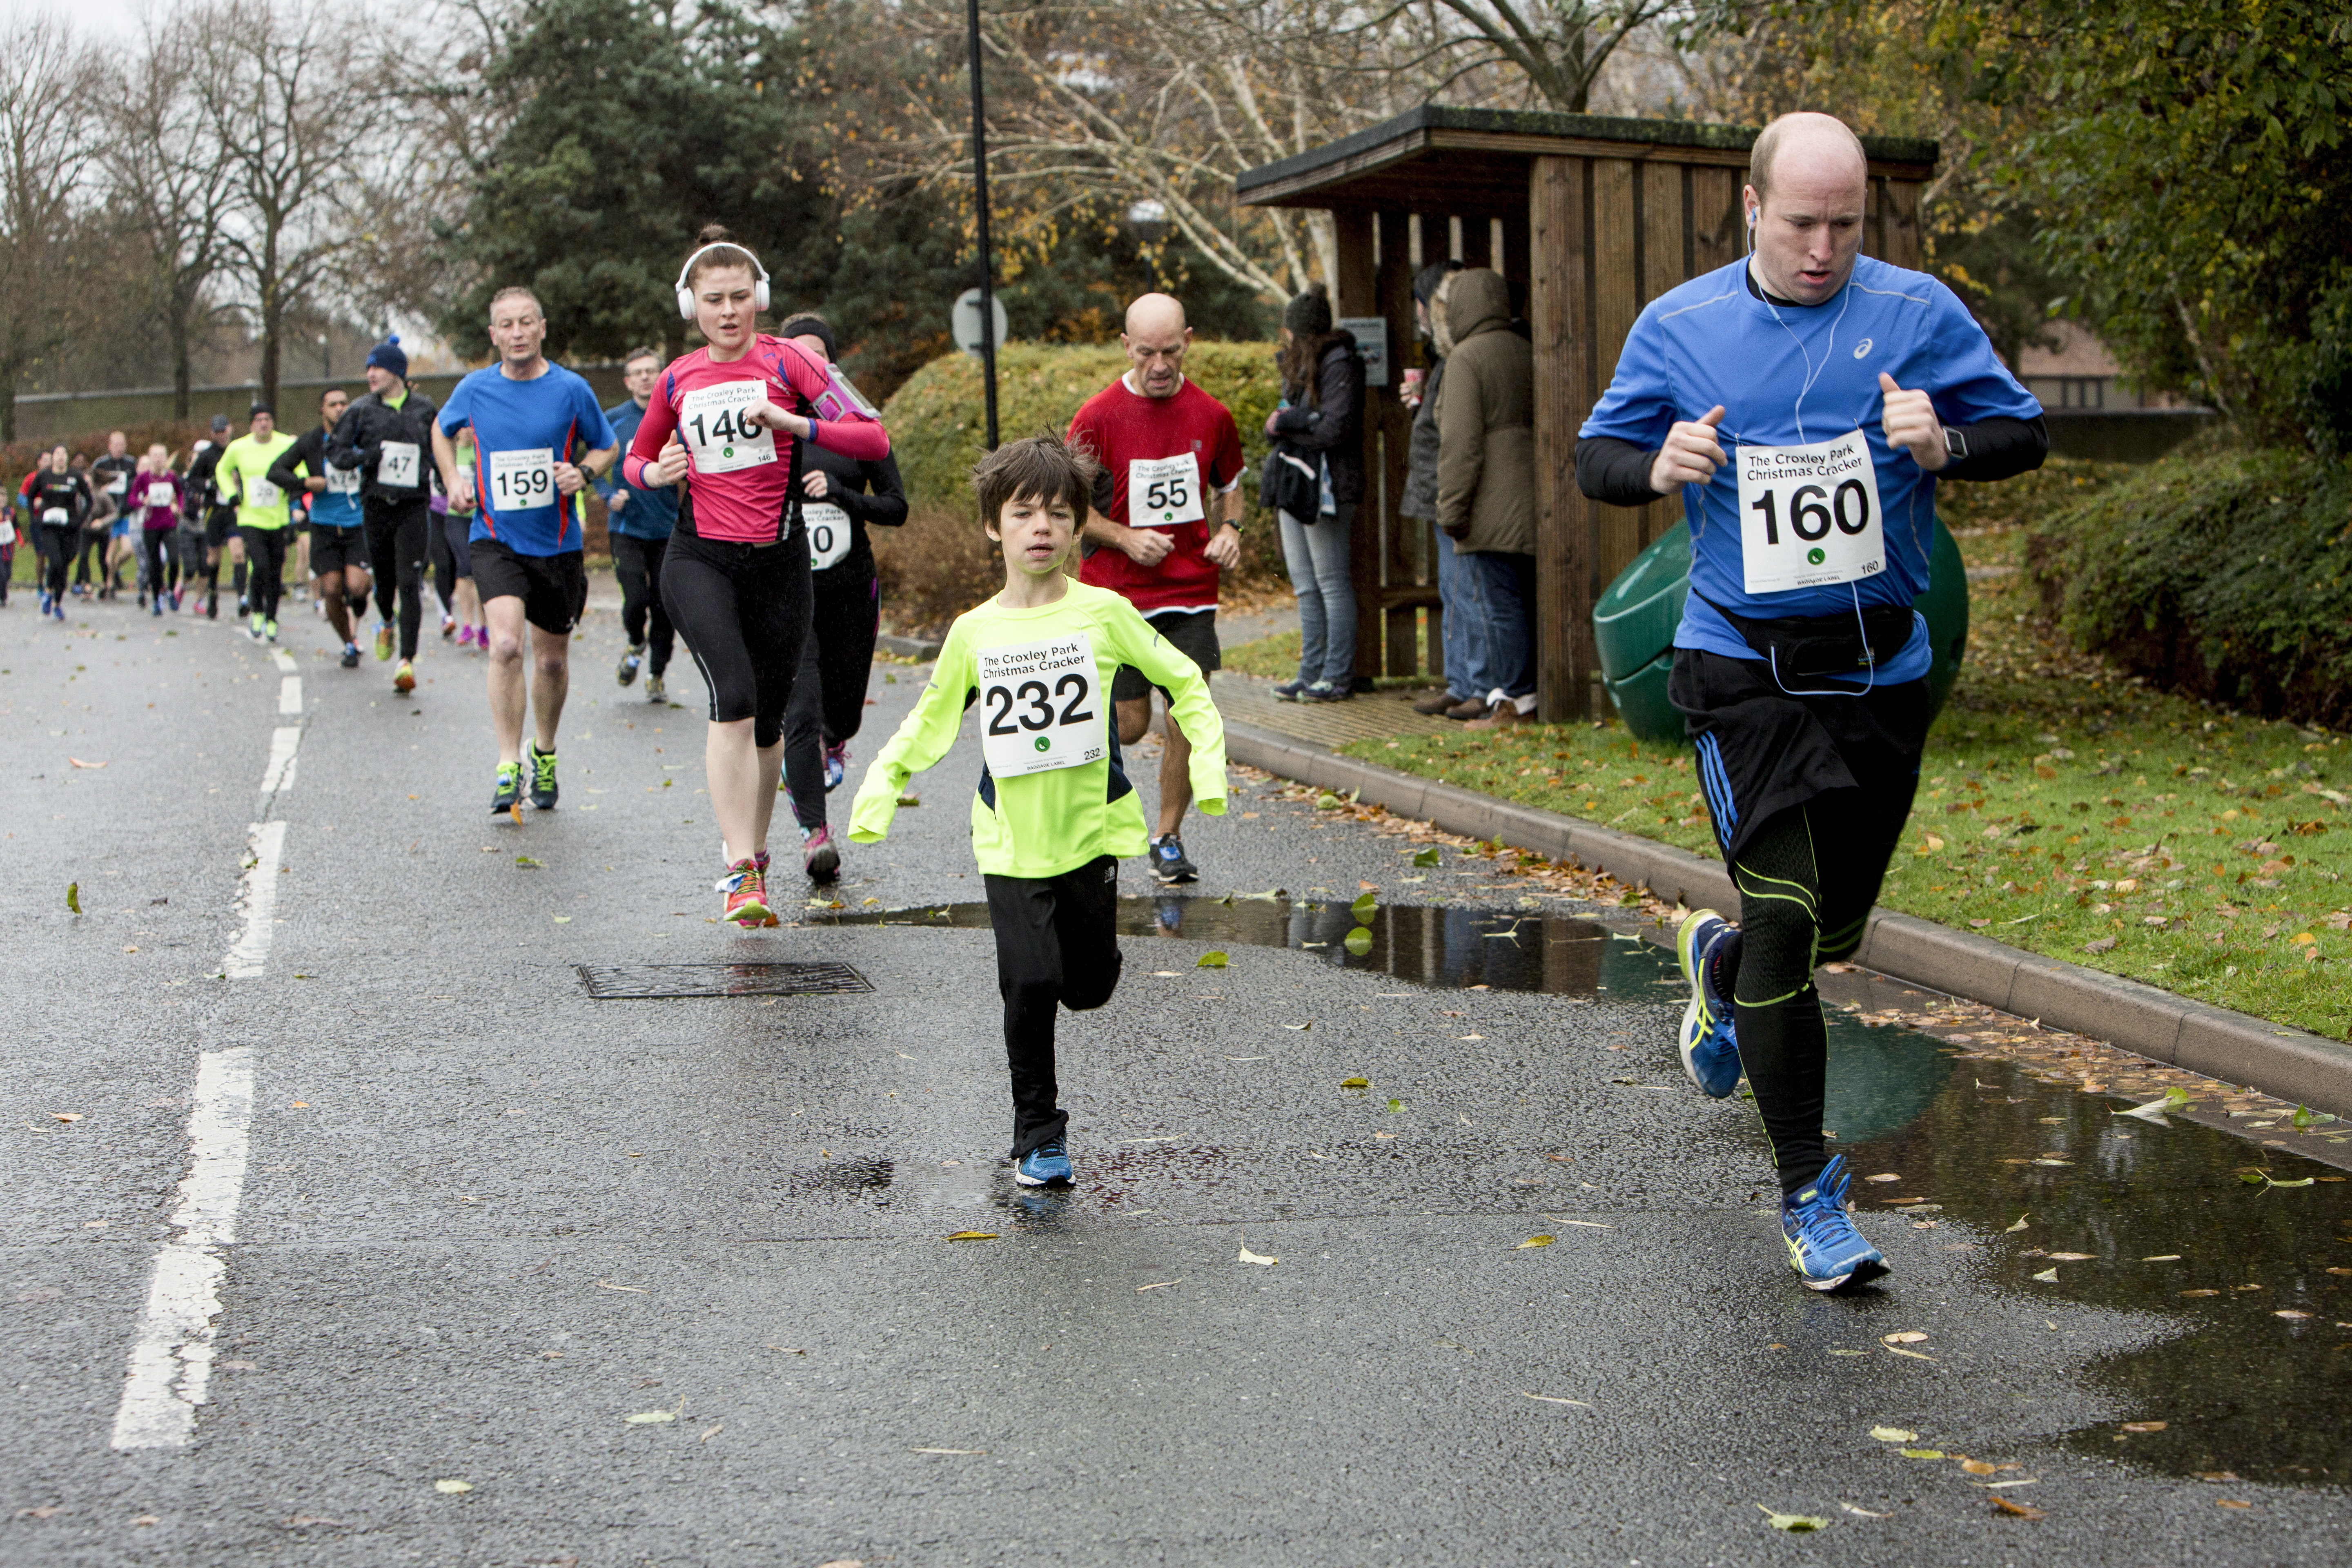 Croxley Park 10K Run | Runners